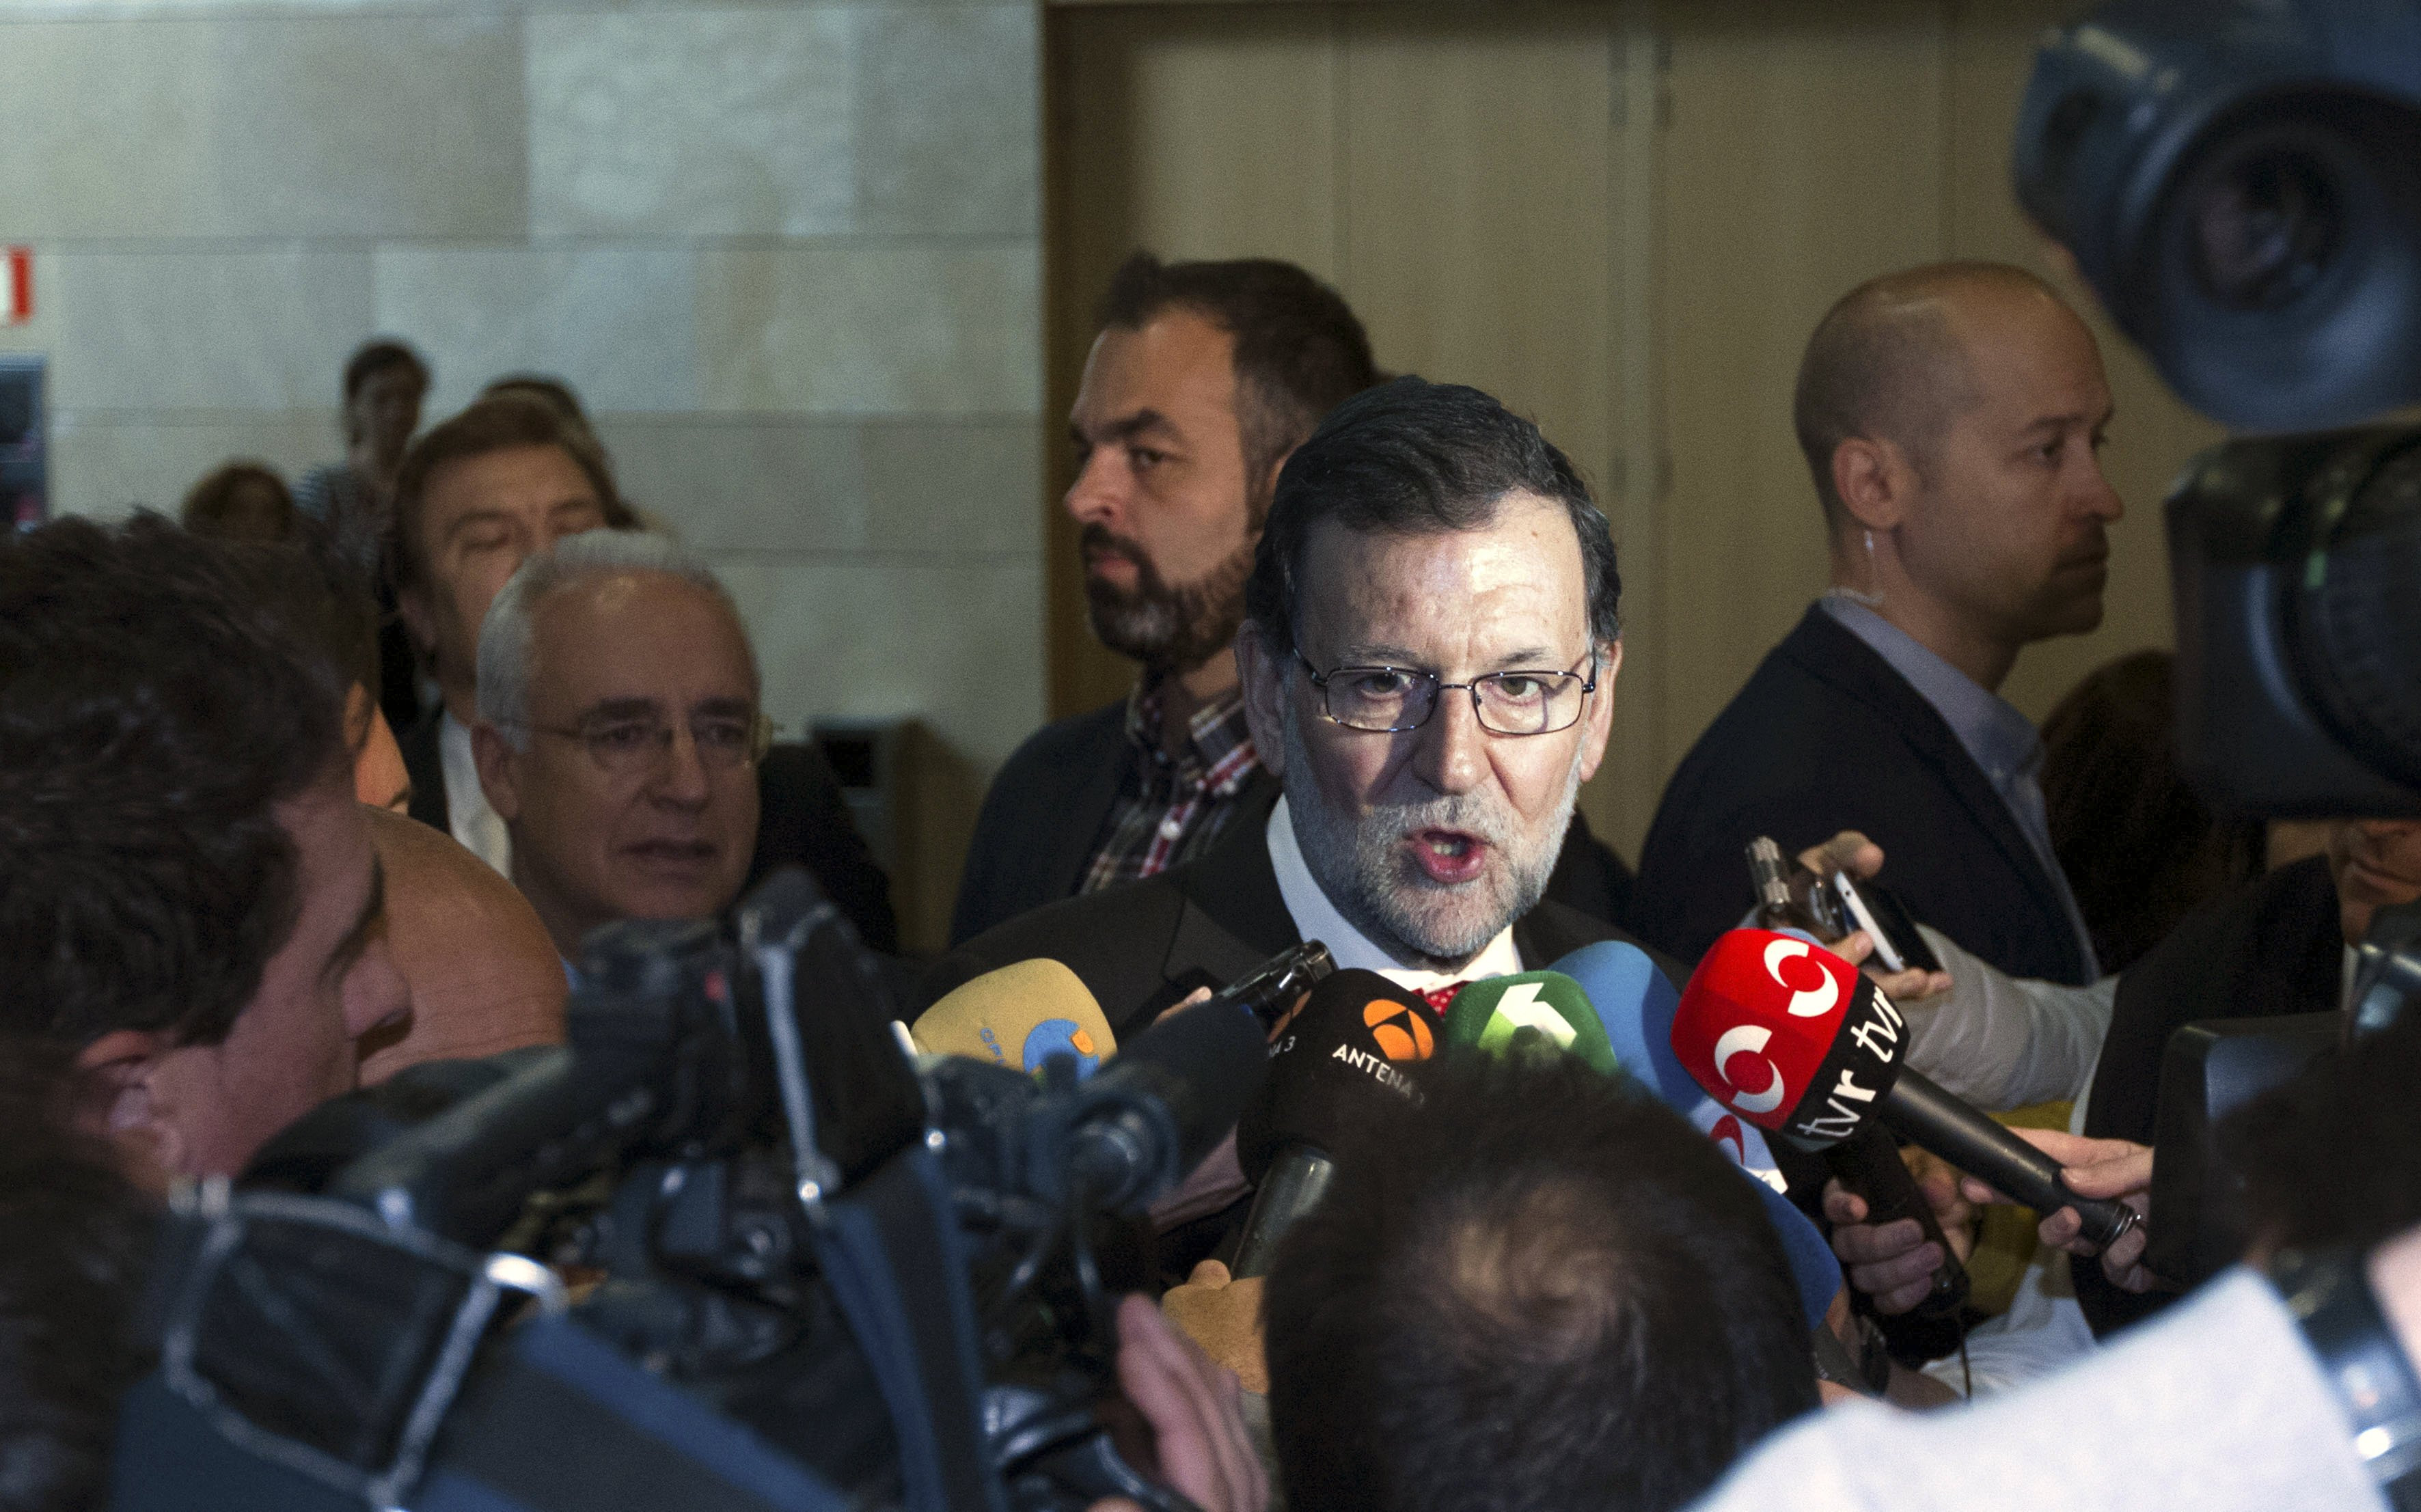 El presidente del Gobierno en funciones, Mariano Rajoy, ha afirmado hoy que el pacto alcanzado entre Podemos e IU responde a una coalición de "extremistas y radicales", que "no es lo que le conviene al progreso de España y del país". Eliminar